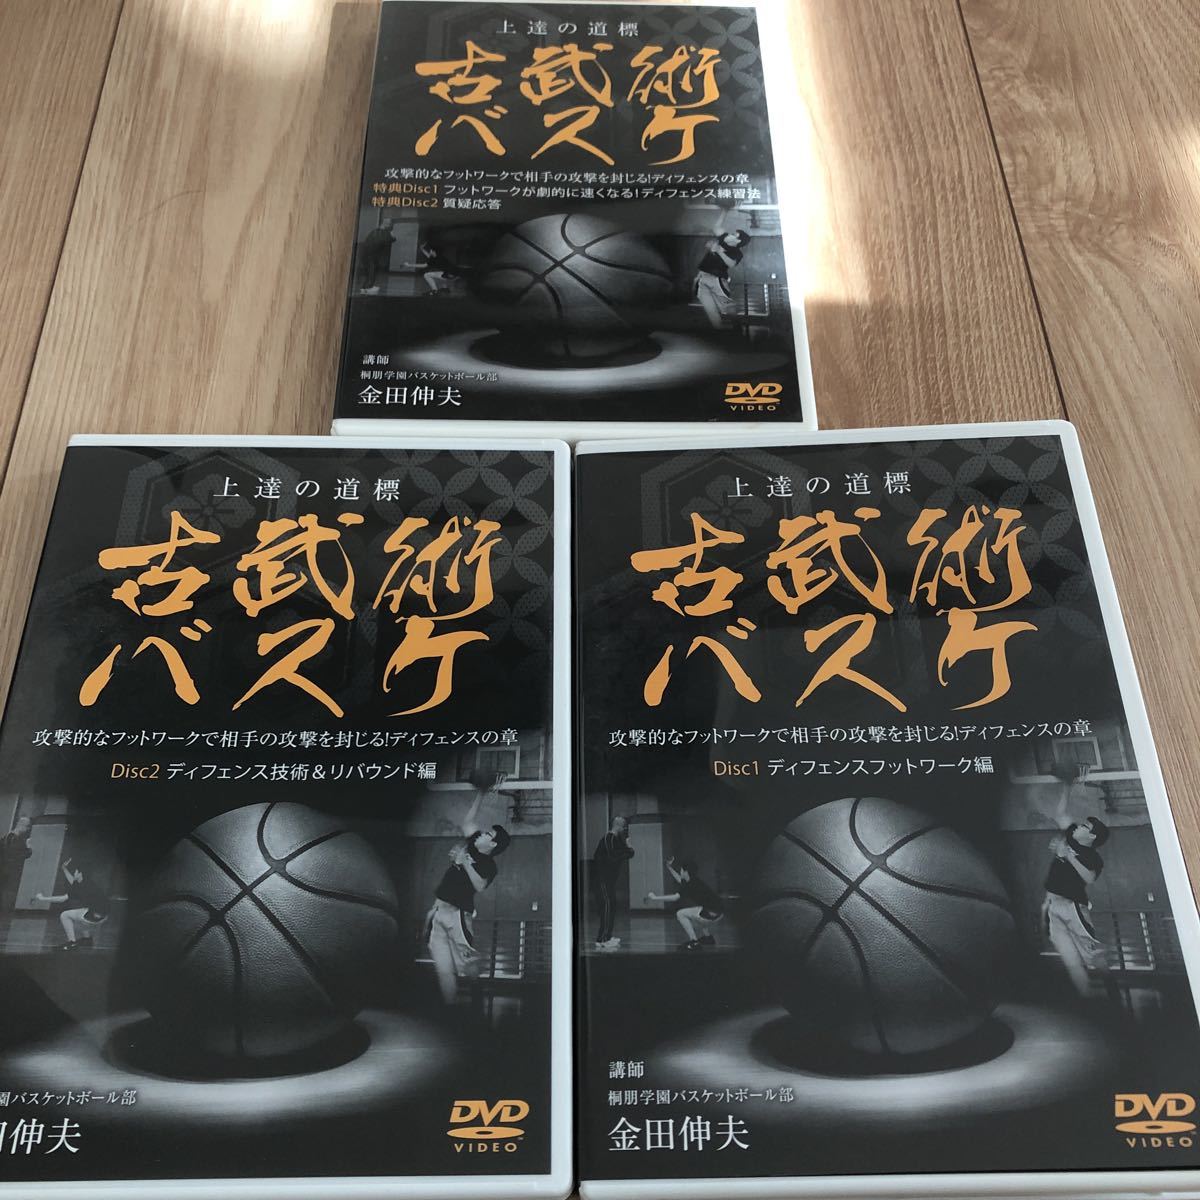 特典 古武術 バスケ 桐朋学園 練習法 DVD フットワーク リバウンド ディフェンス編